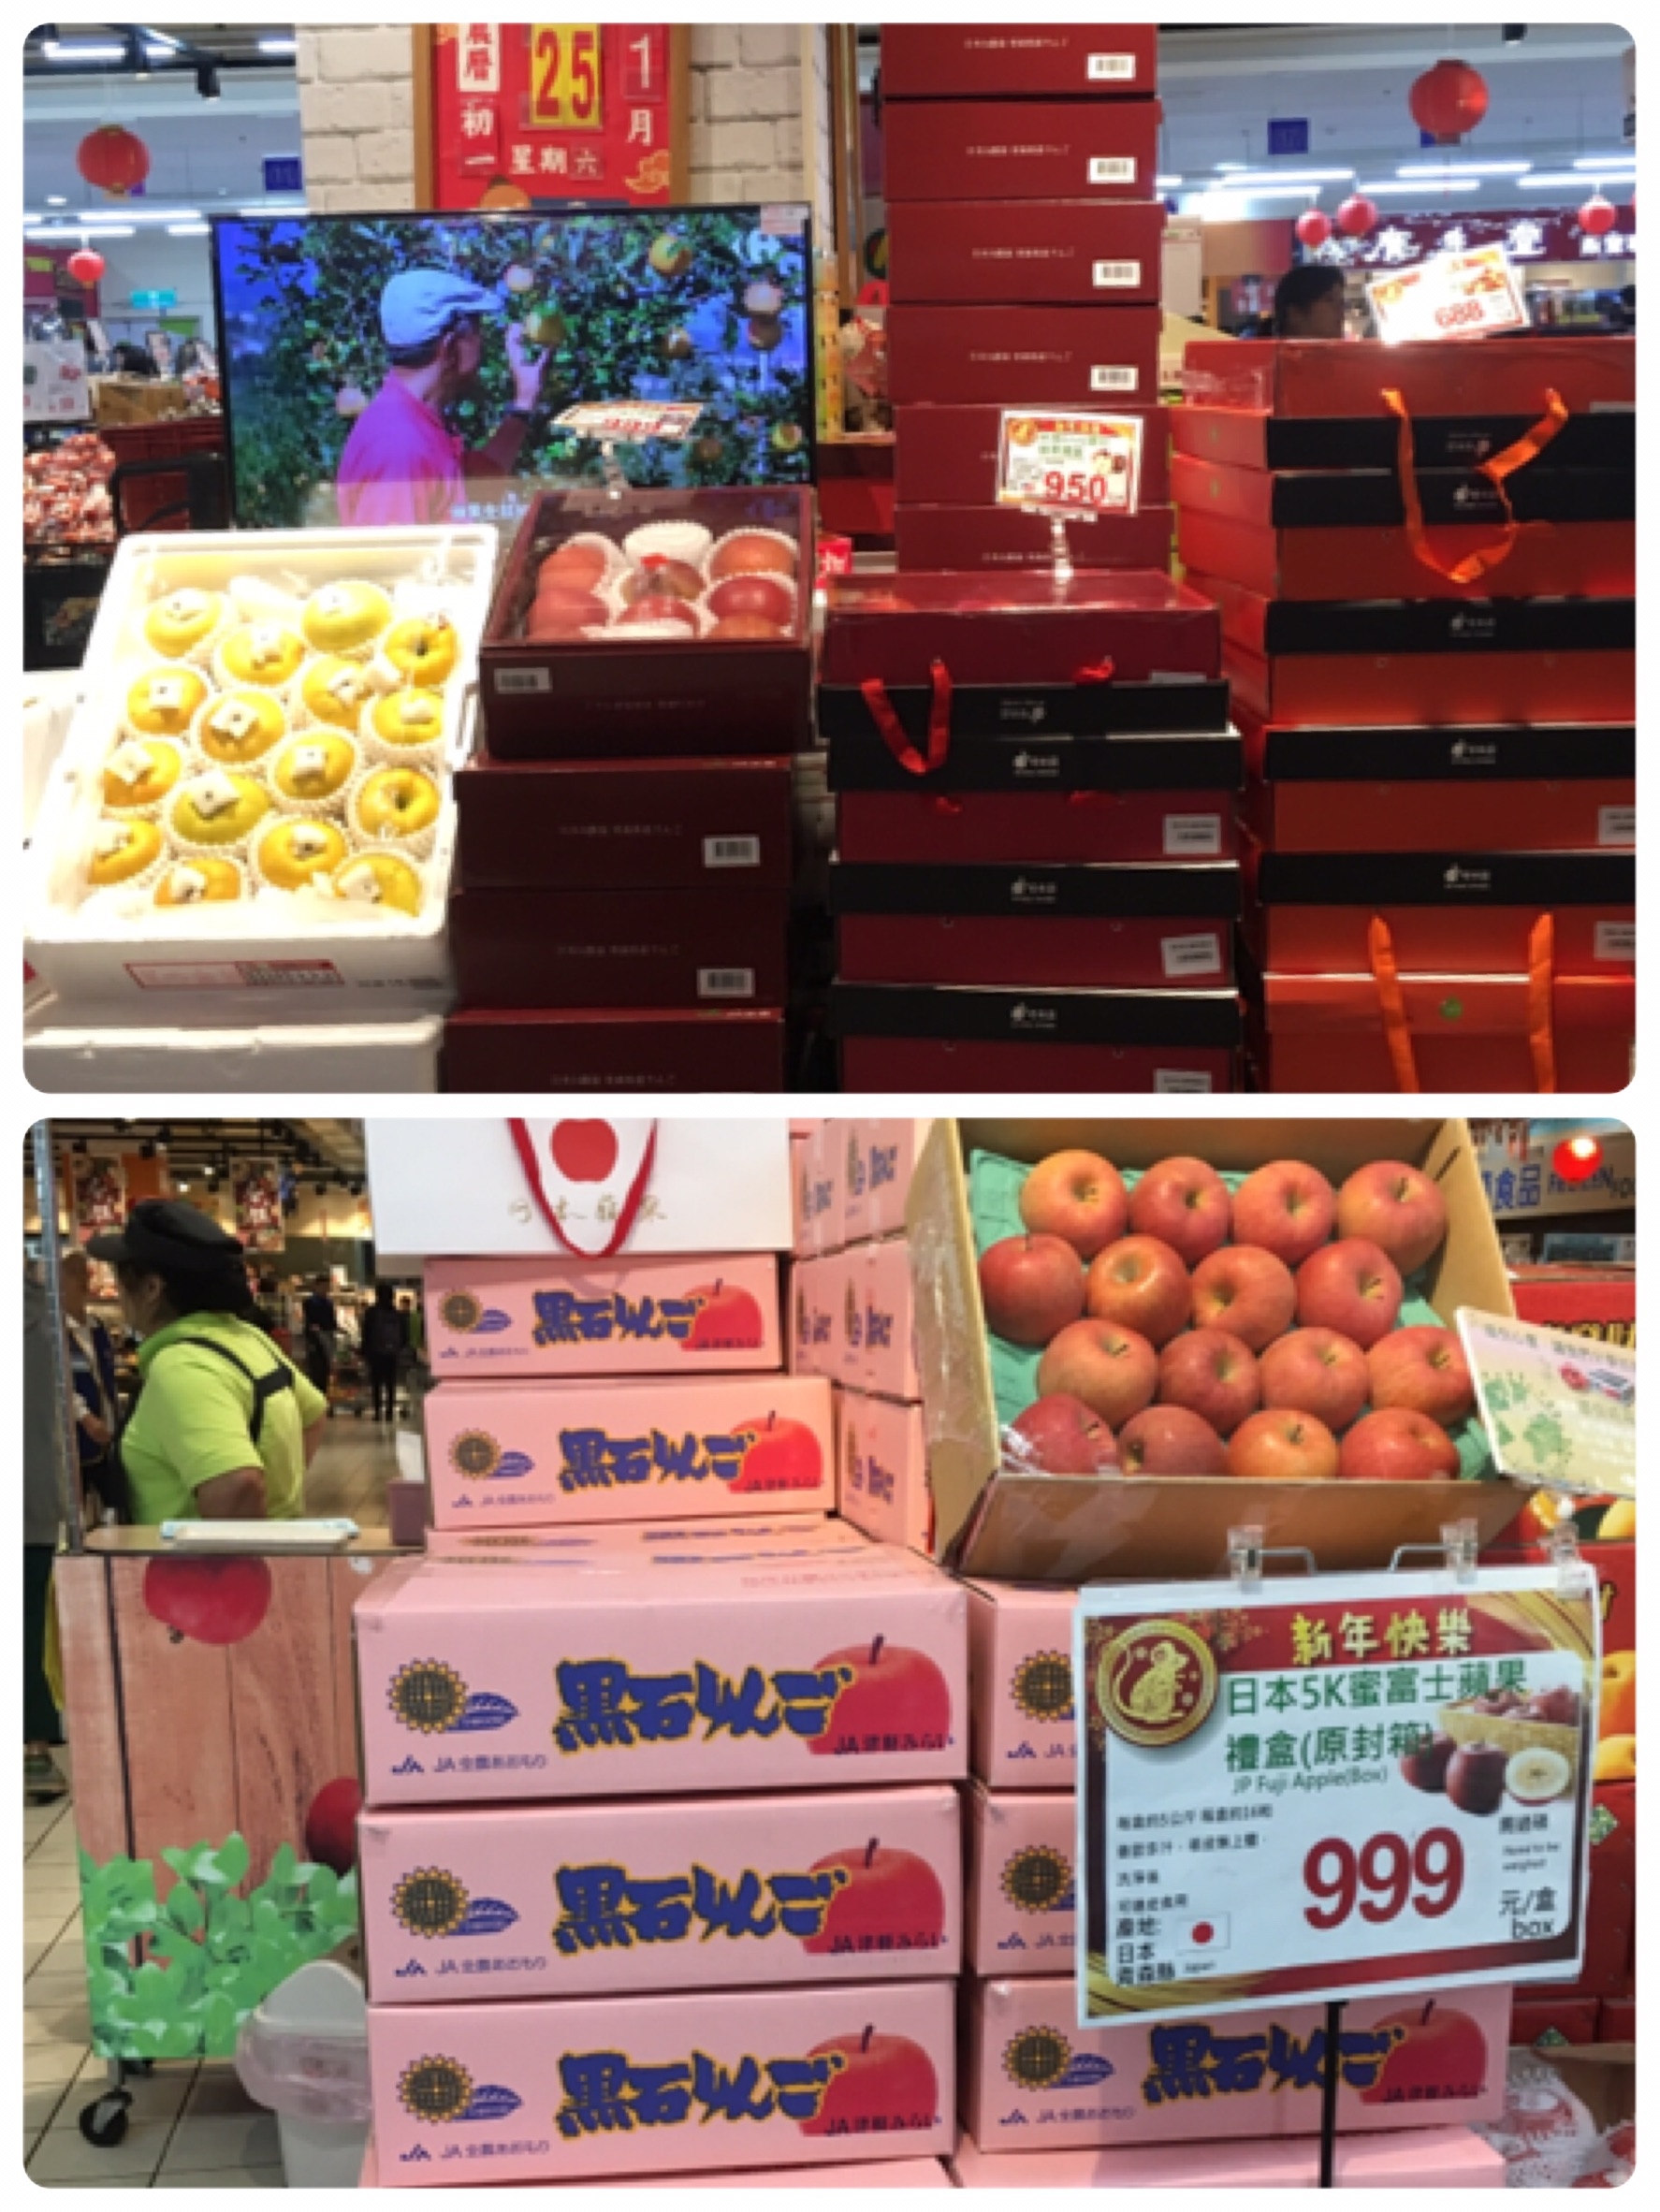 旧正月前の台湾のスーパーマーケット